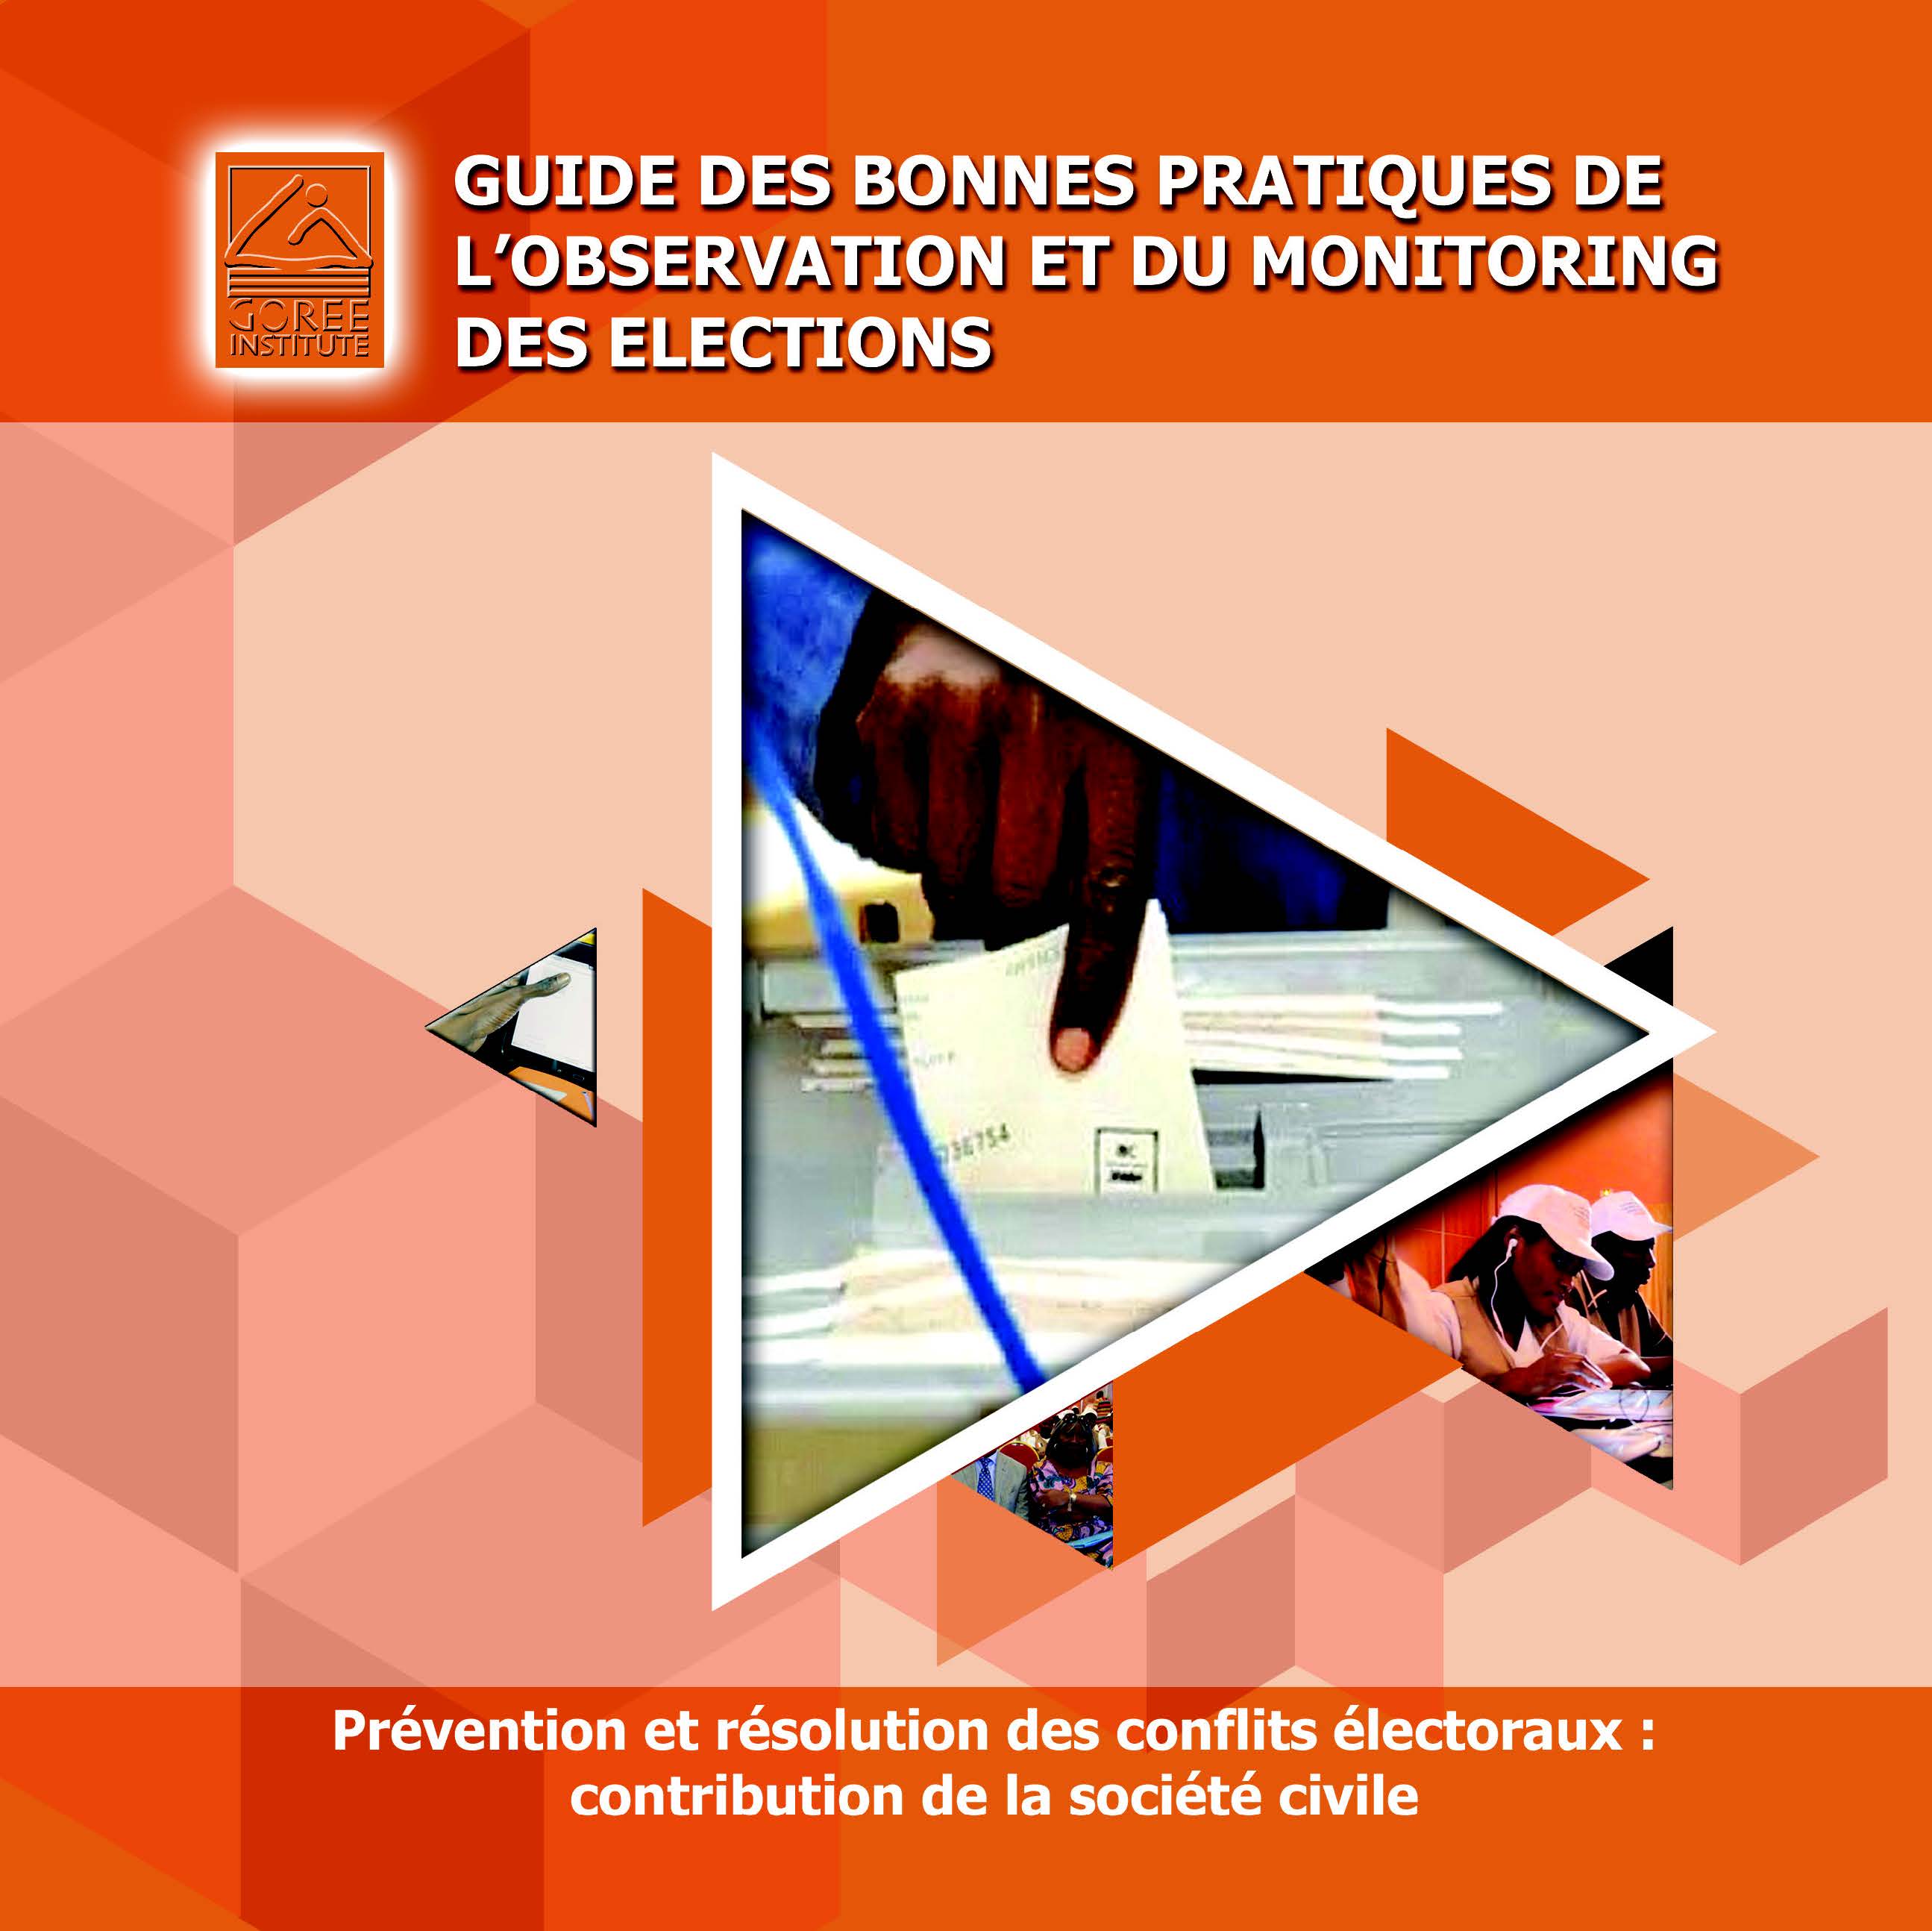 Guide des Bonnes pratiques électorales - GOREE INSTITUTE